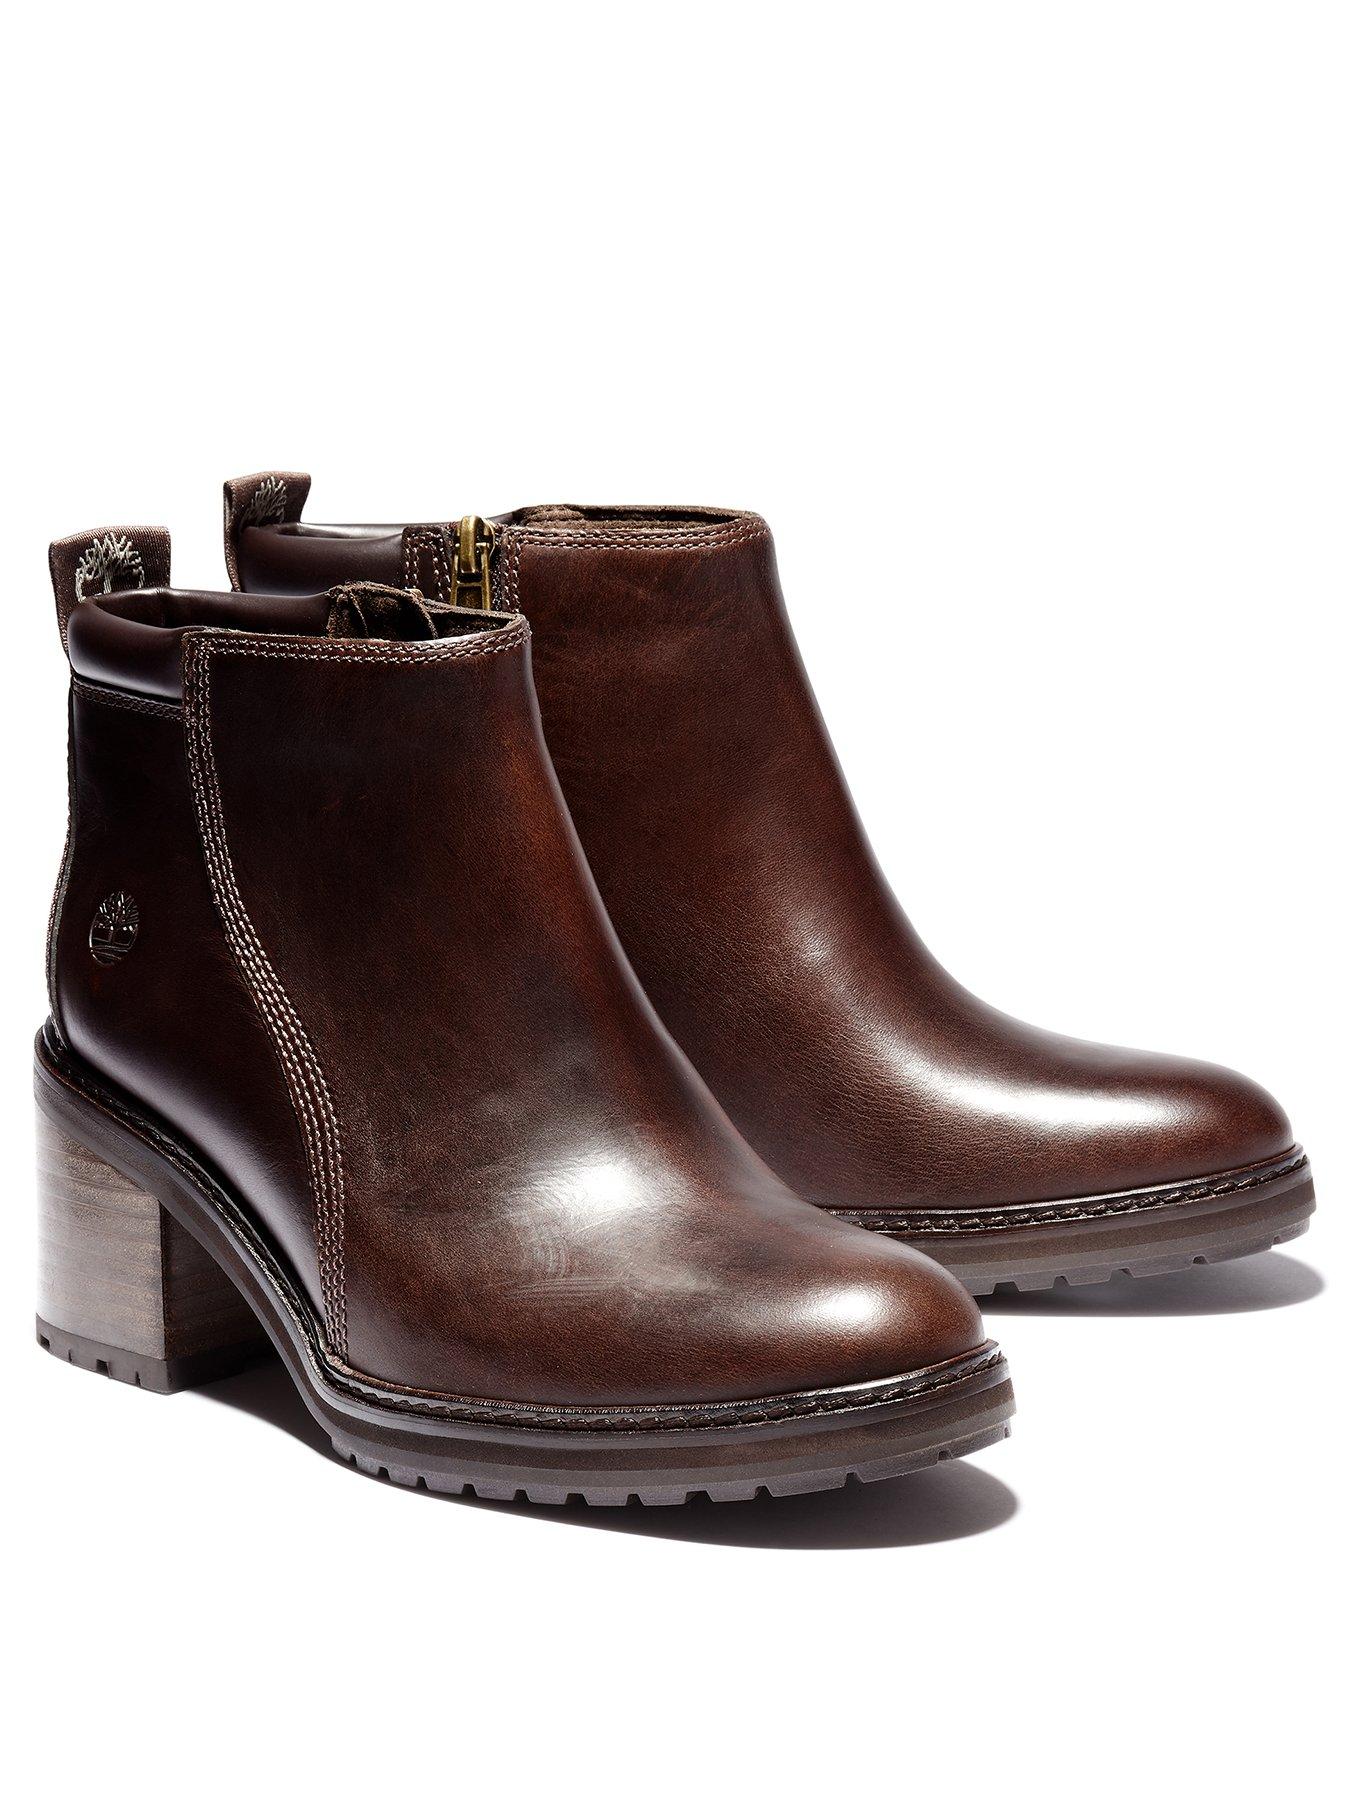 timberland boots sale womens uk